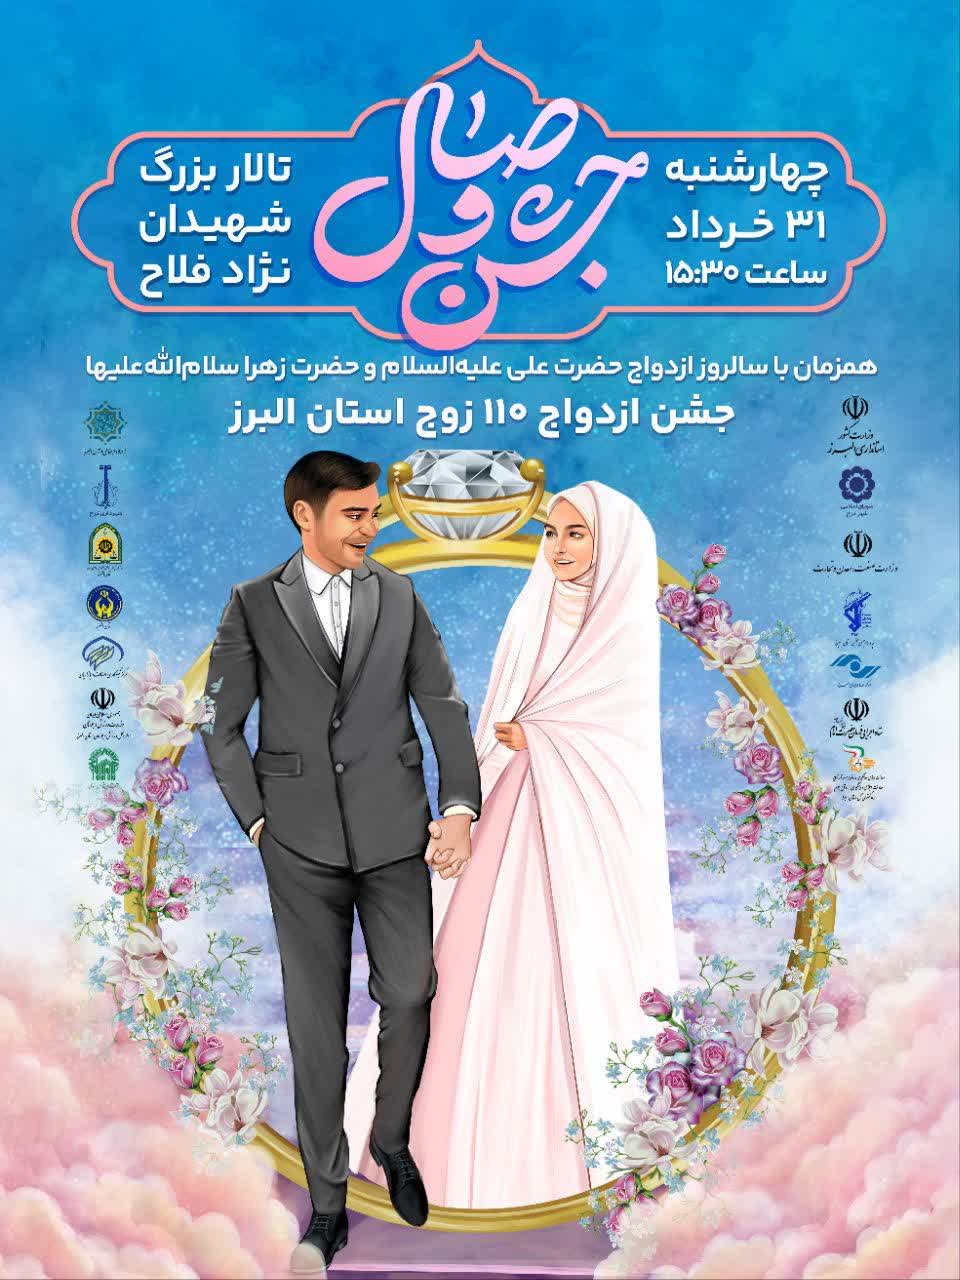 جشن وصال ۱۱۰ زوج در استان البرز برگزار می شود